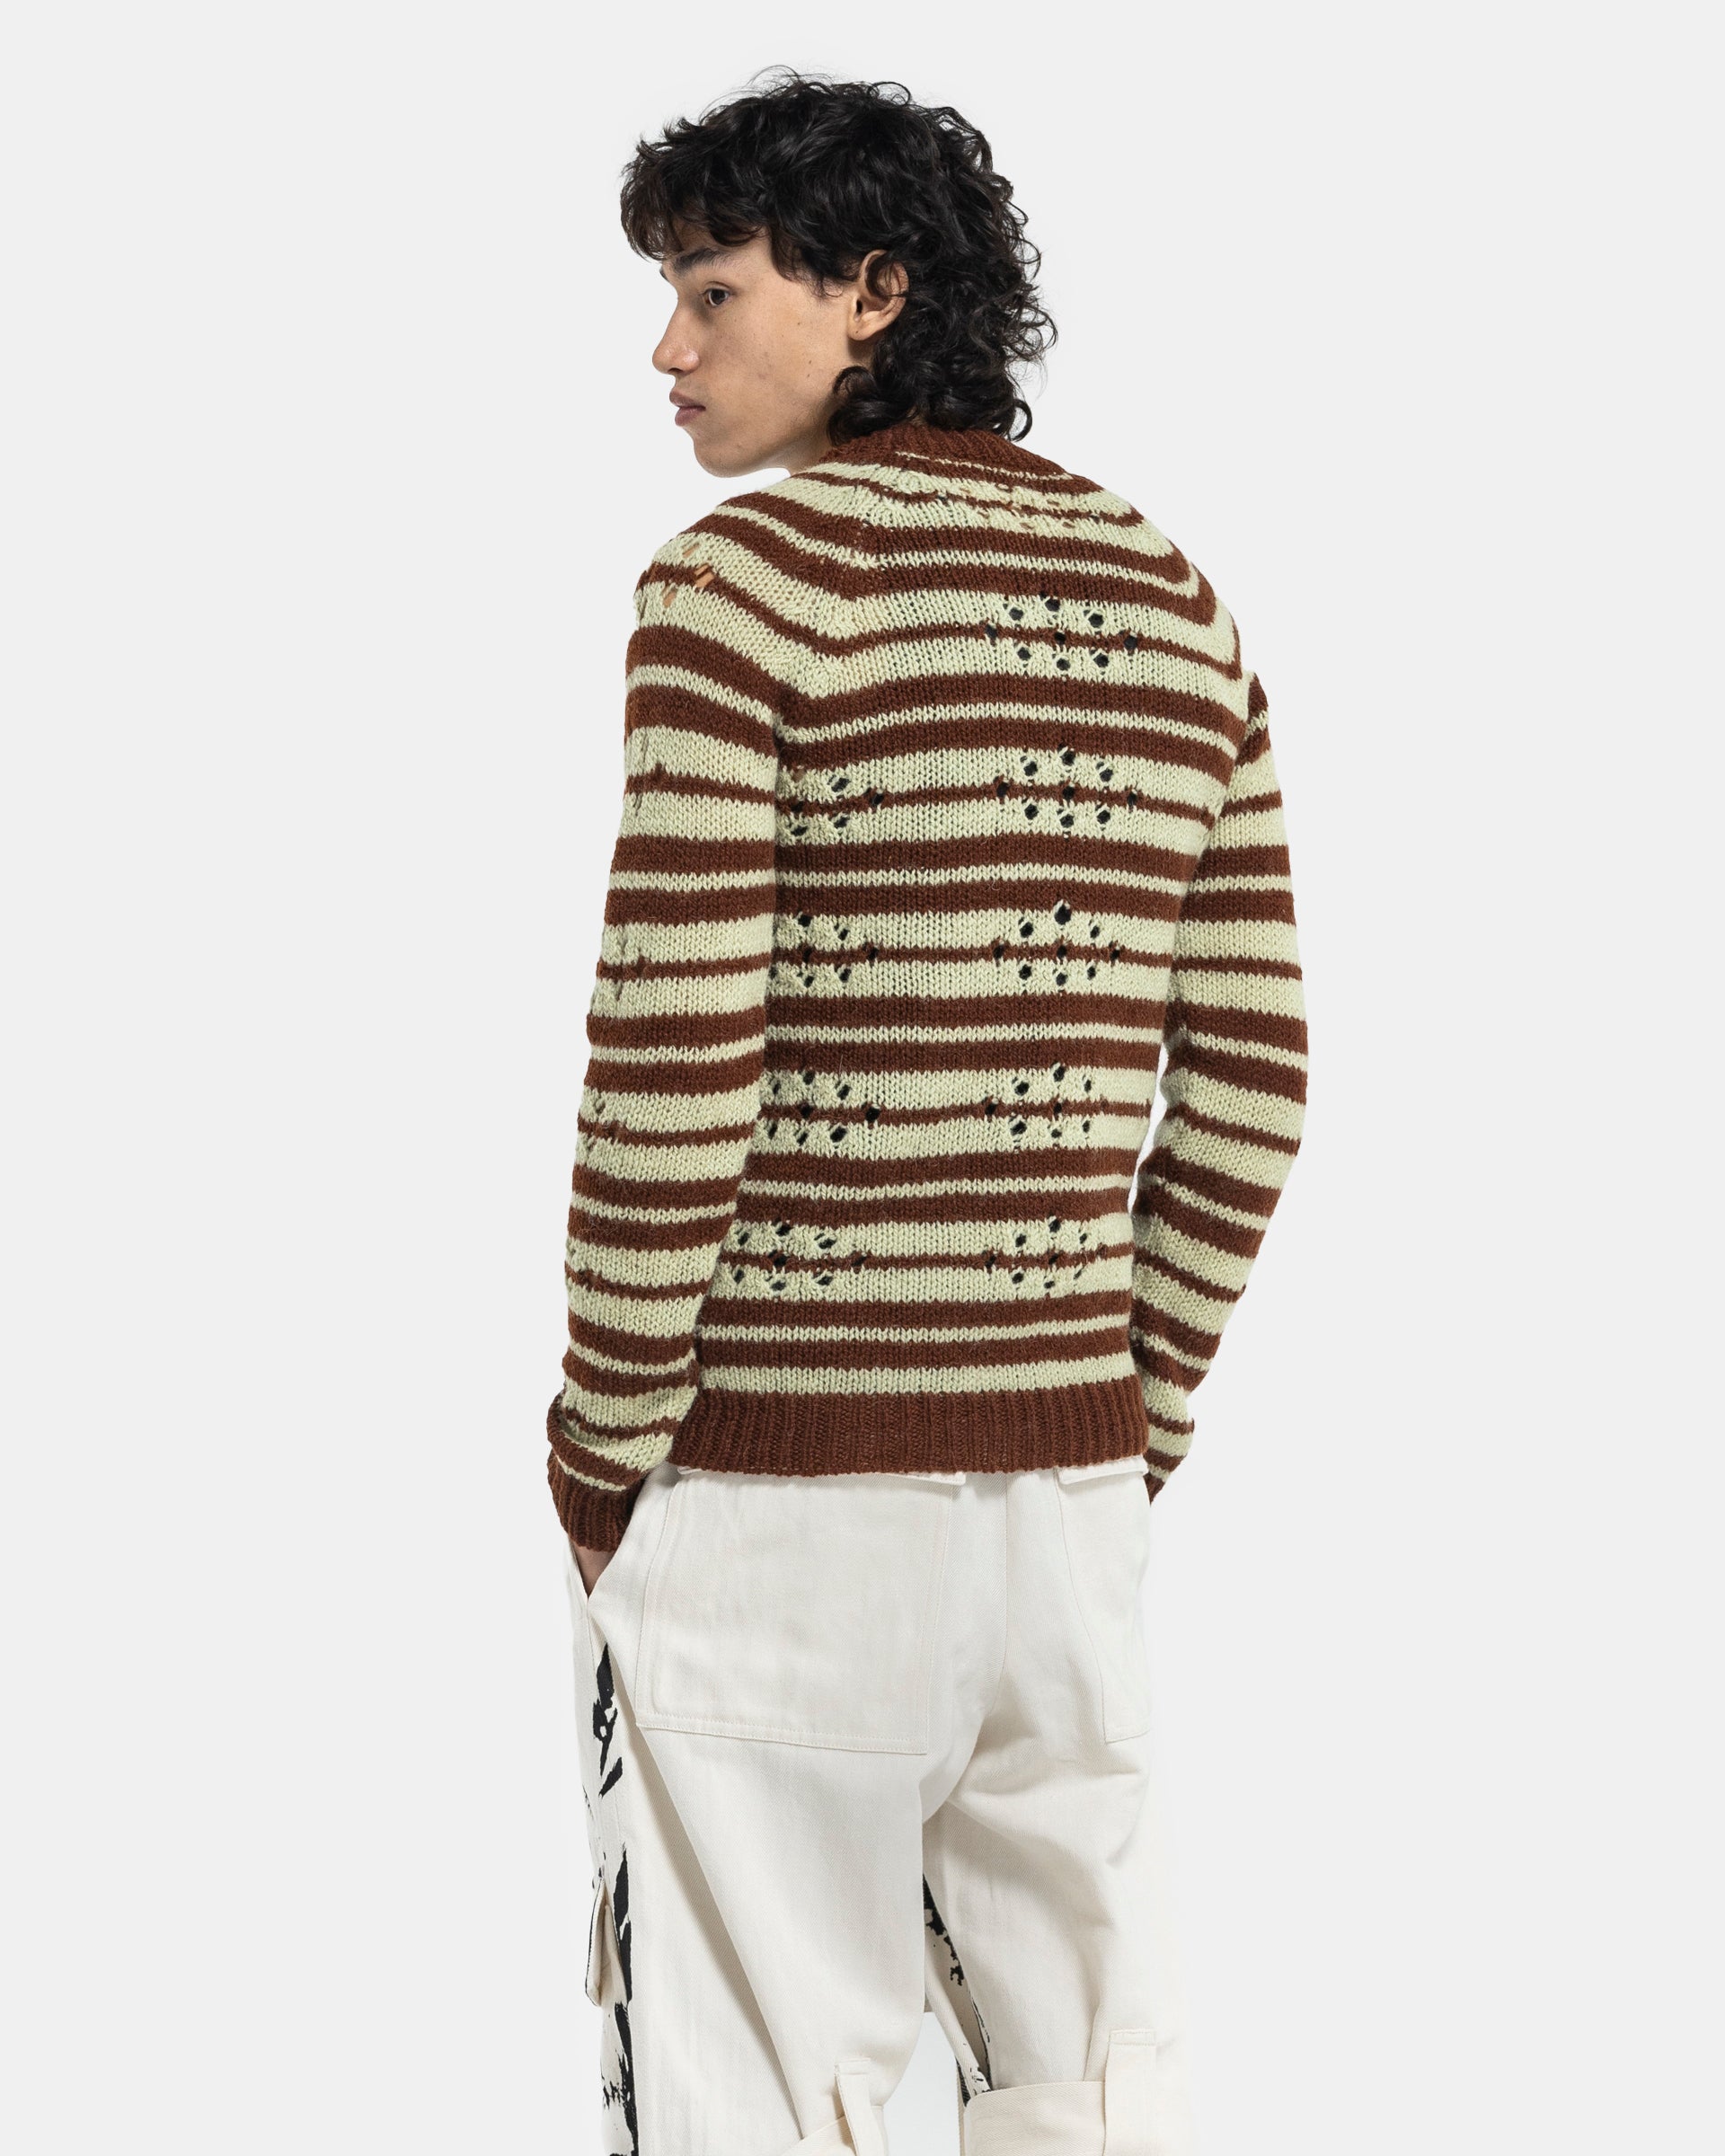 Mendel Sweater in Brown